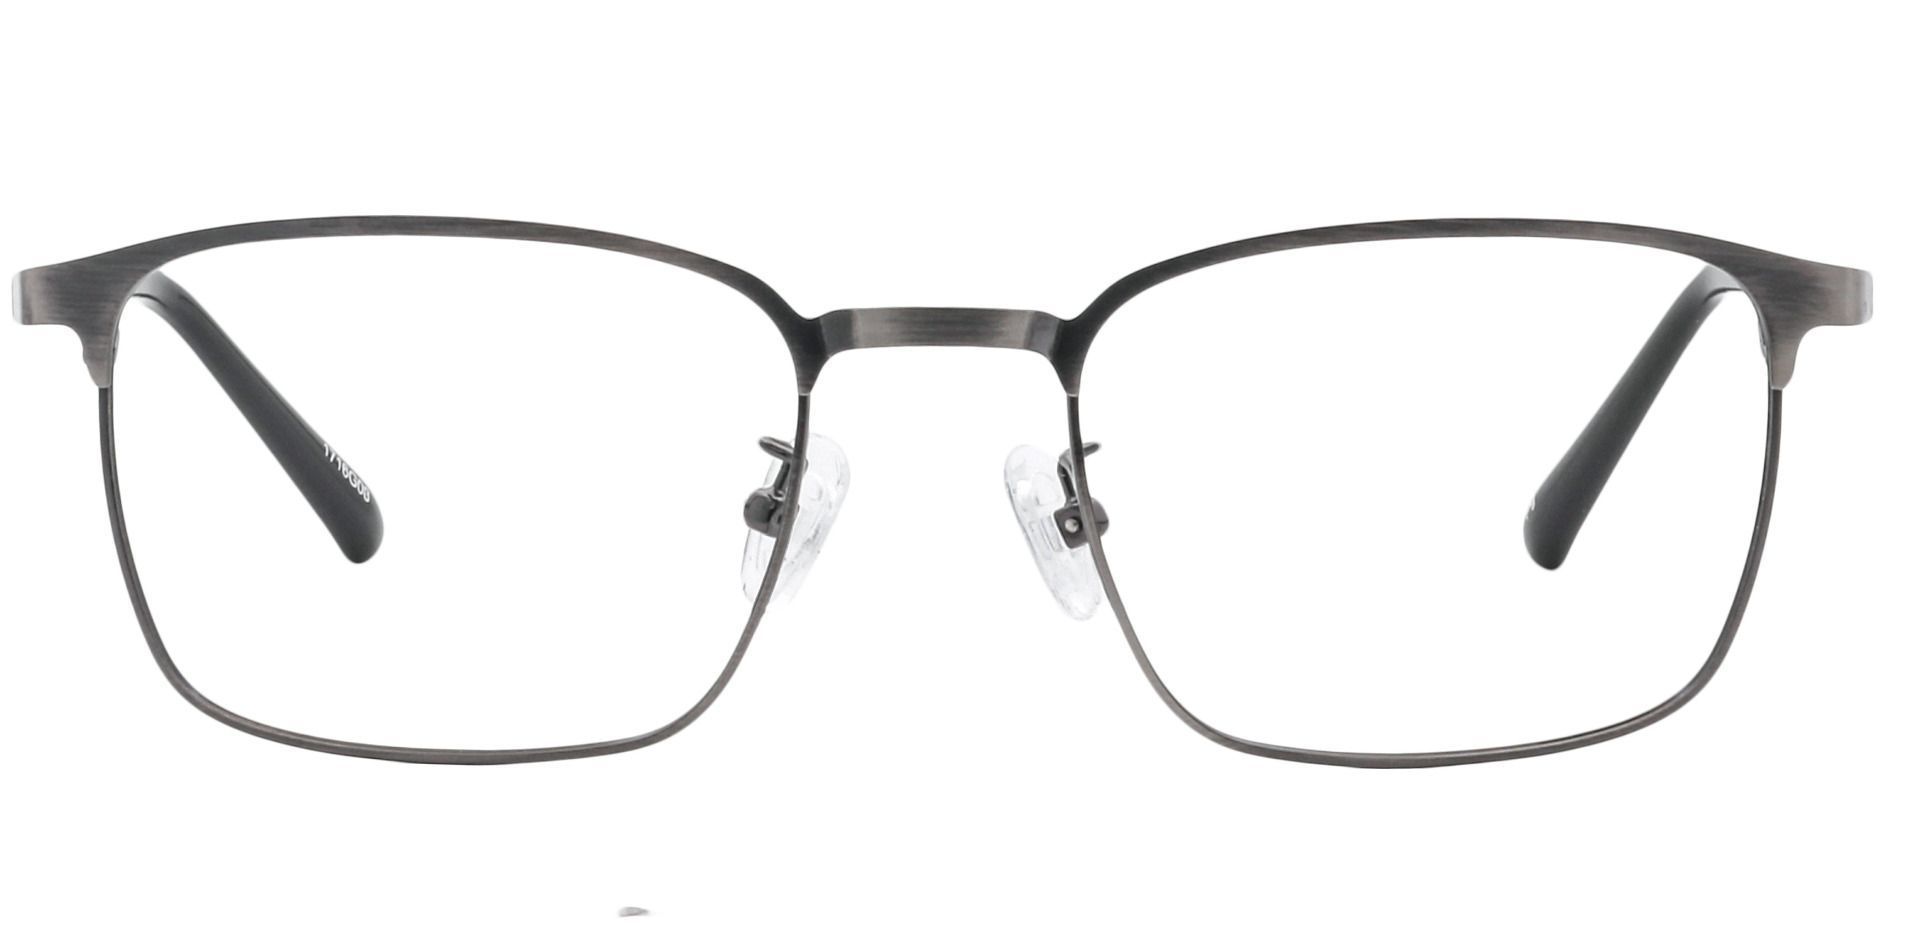 Kingston Square Eyeglasses Frame - Gray